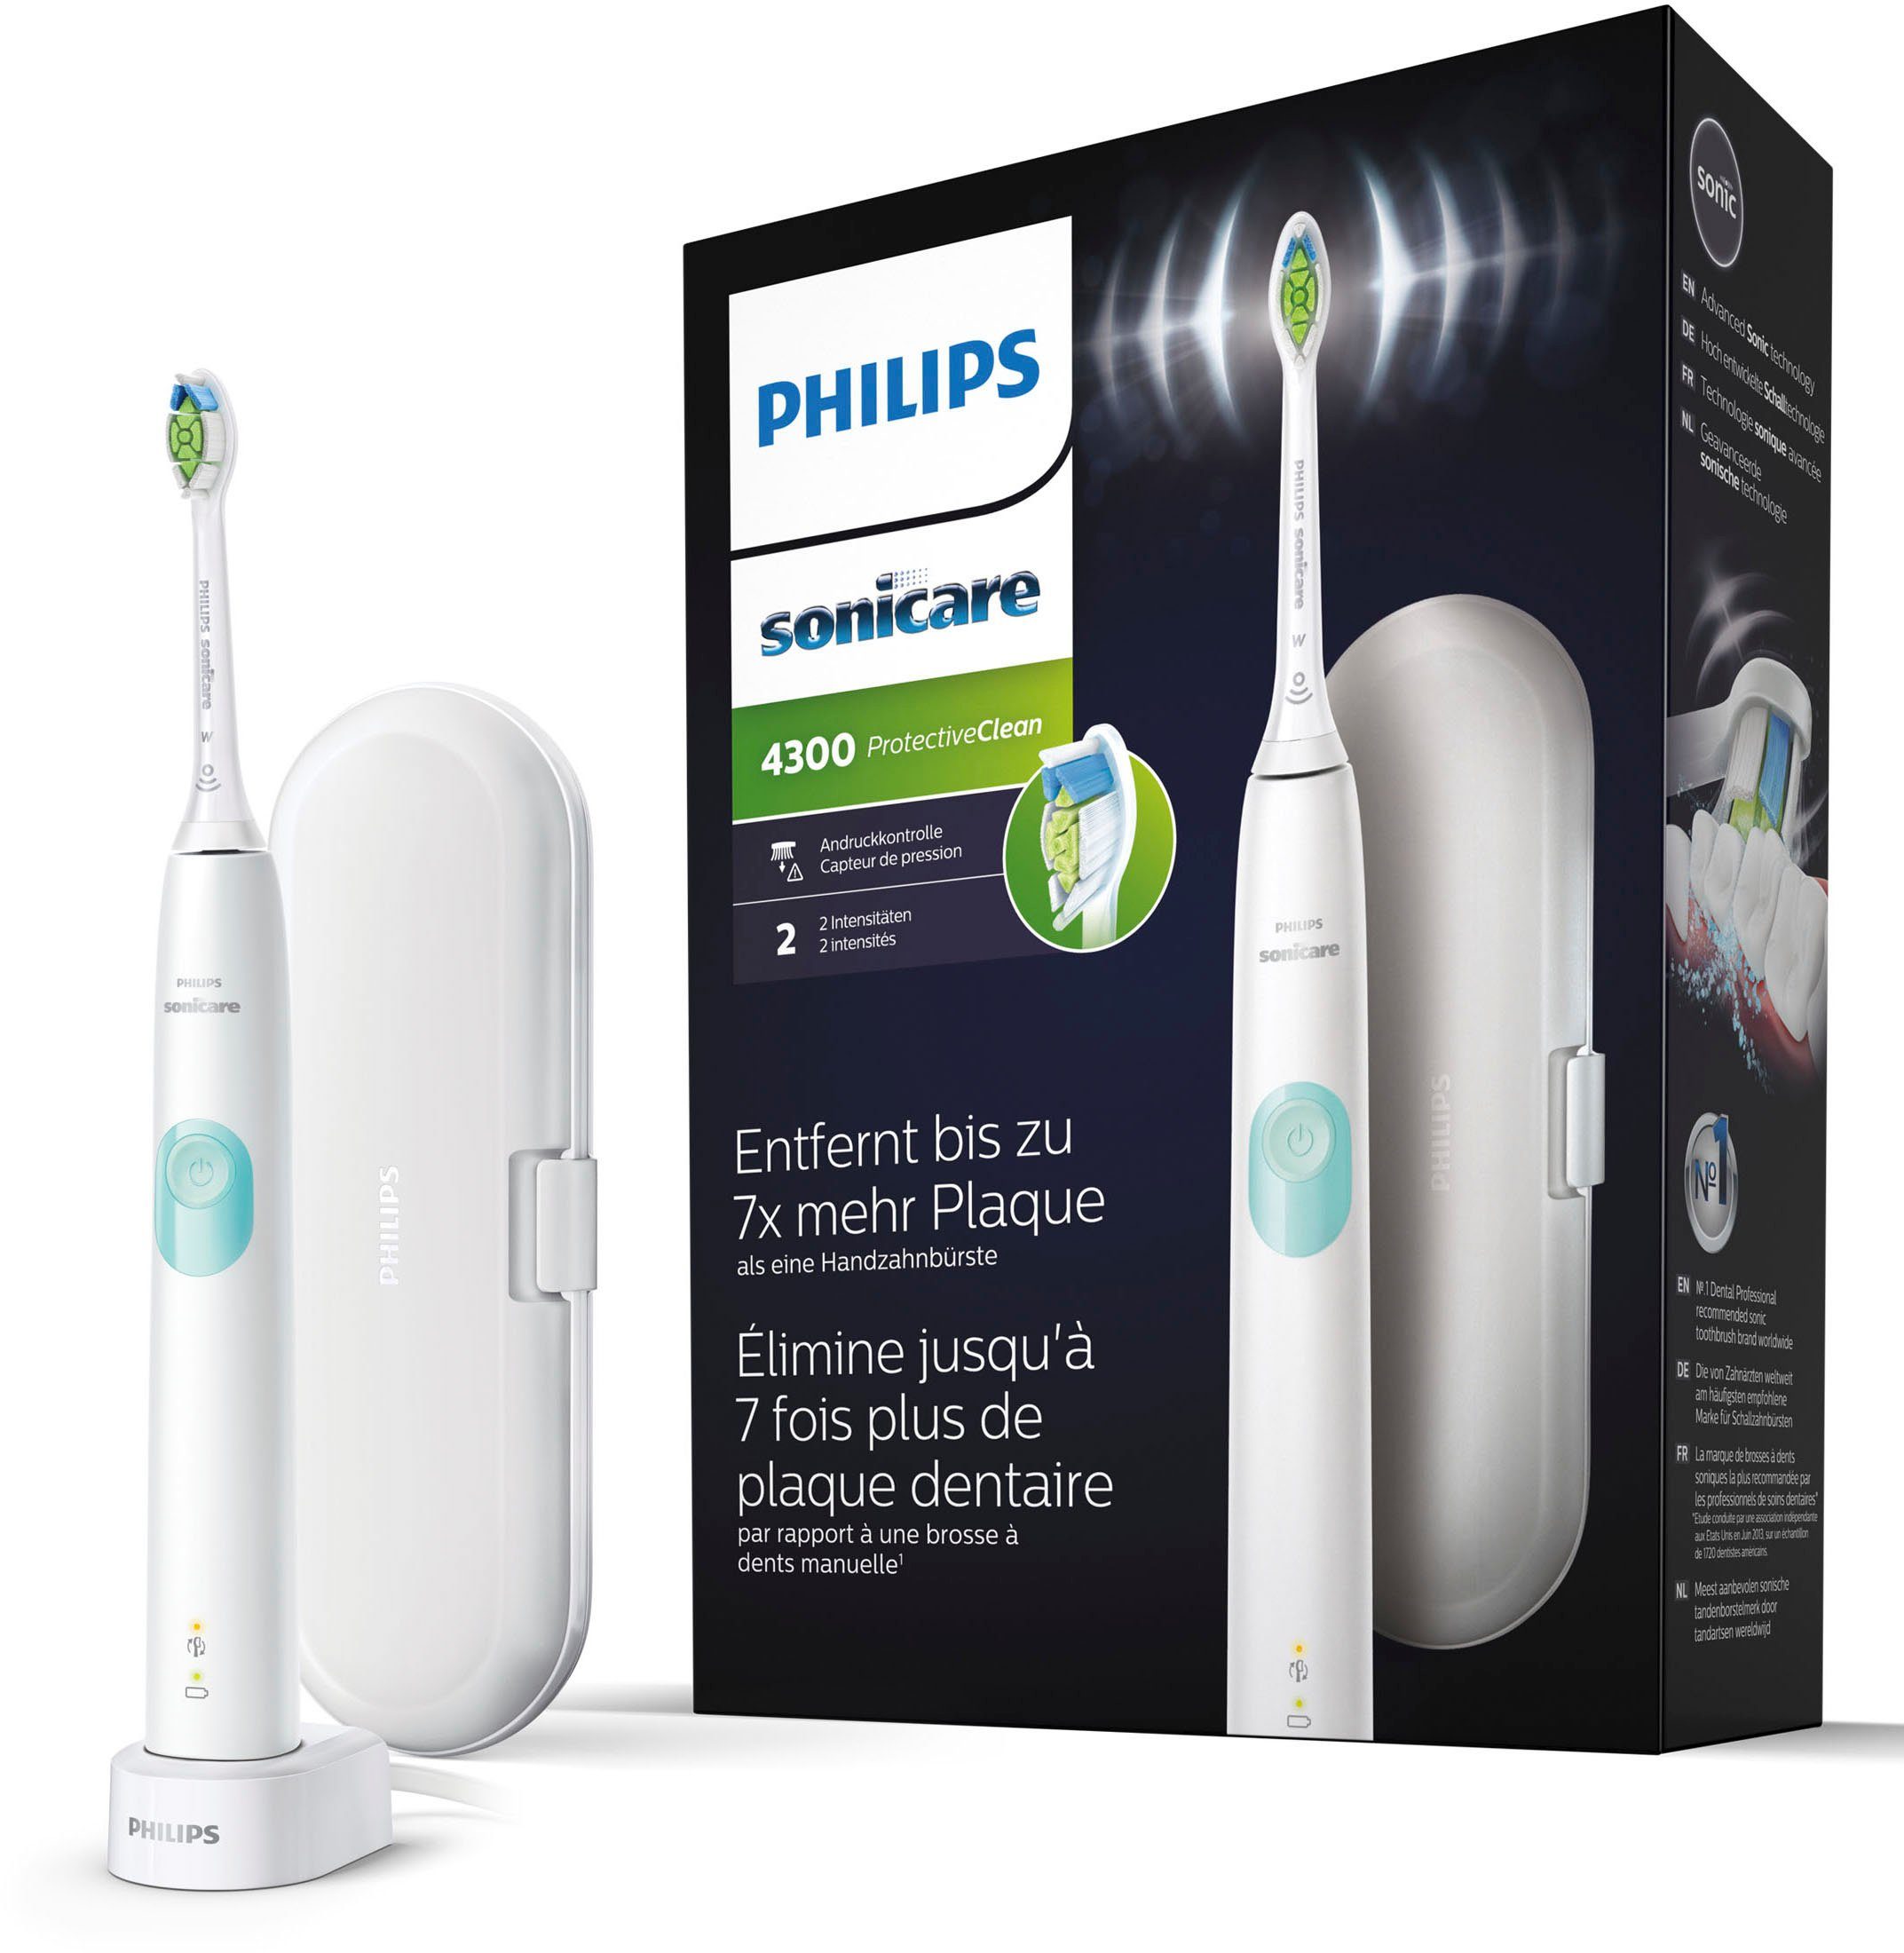 Philips Sonicare Elektrische Zahnbürste ProtectiveClean 4300 HX6807/28,  Aufsteckbürsten: 1 St., mit Schalltechnologie und BrushSync Funktion,  Ladestation, Reiseetui, Weißere Zähne in nur einer Woche